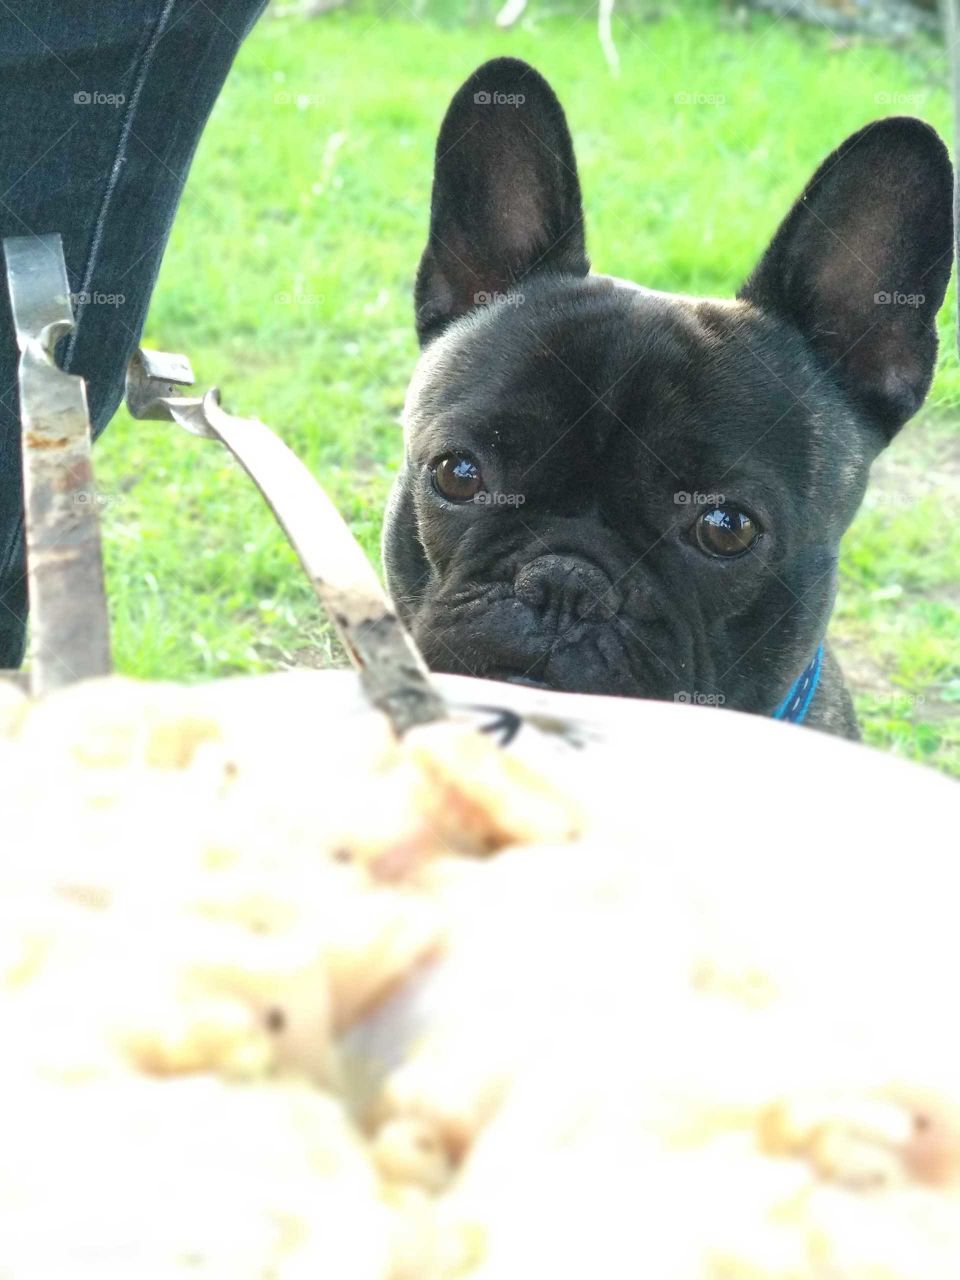 Dog looking at food